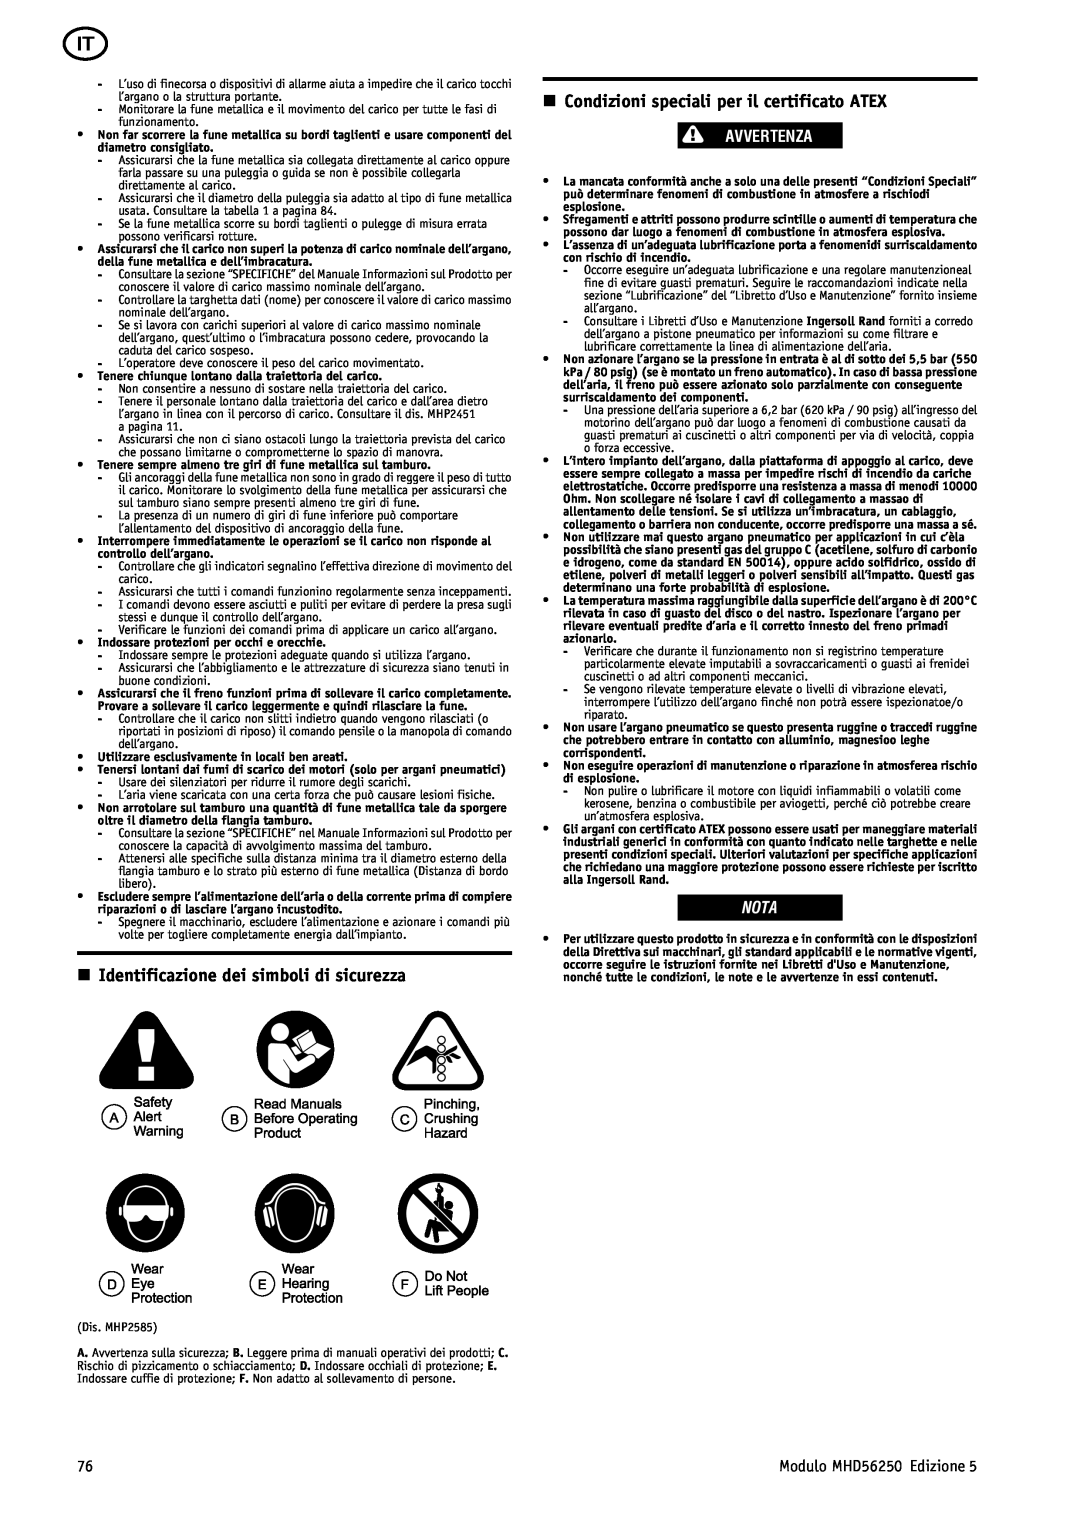 Ingersoll-Rand MHD56250 n Identificazione dei simboli di sicurezza, n Condizioni speciali per il certificato ATEX, Nota 